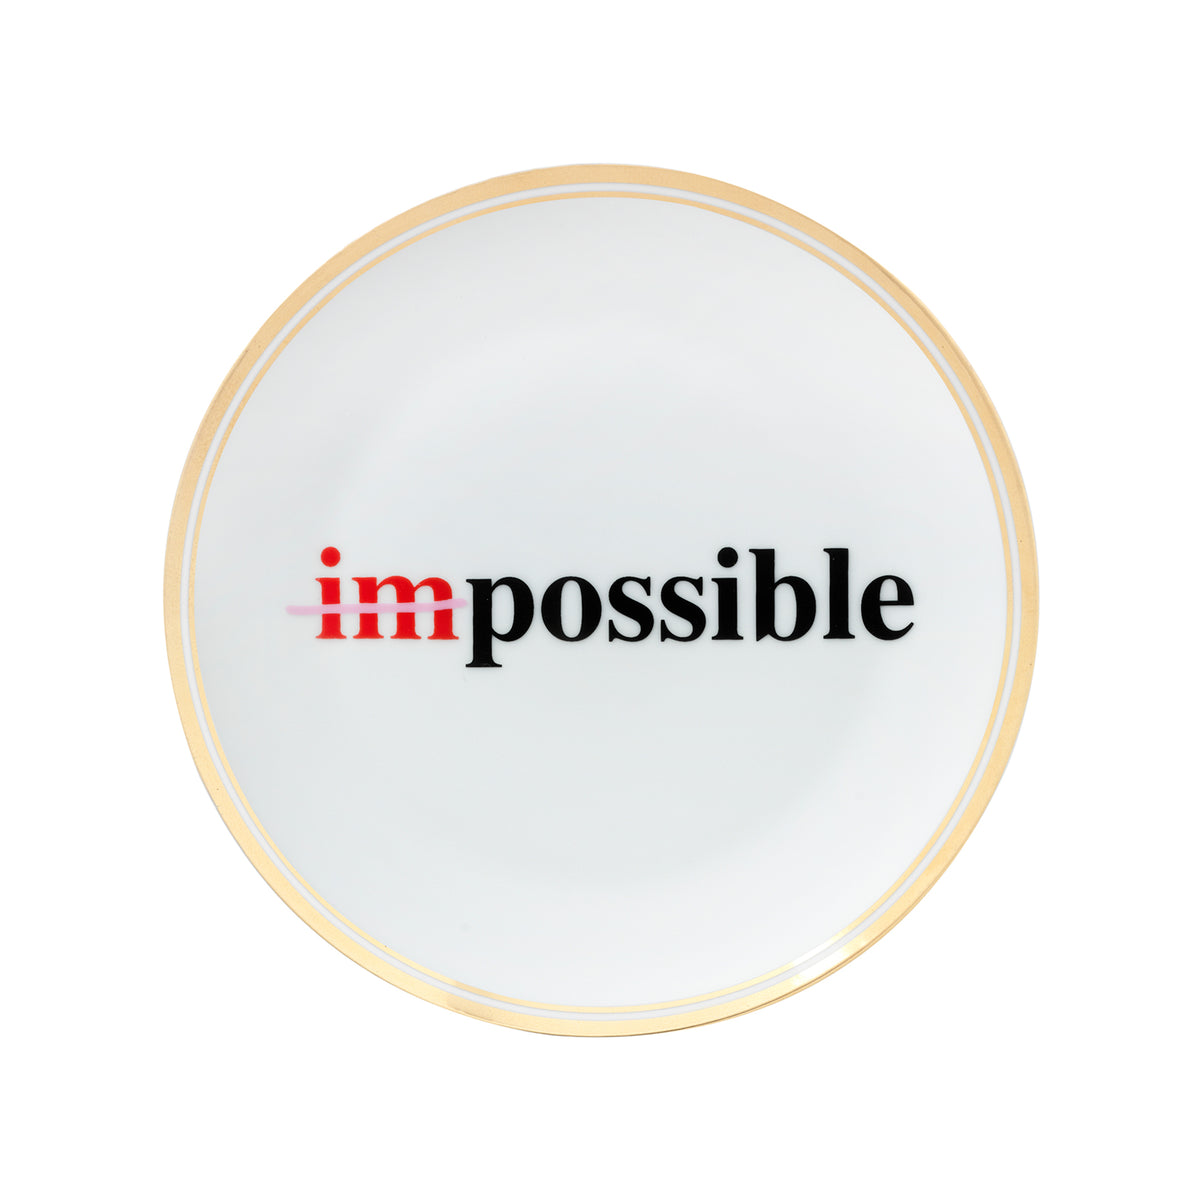 "Impossible" Porcelain Plate. 17 cm